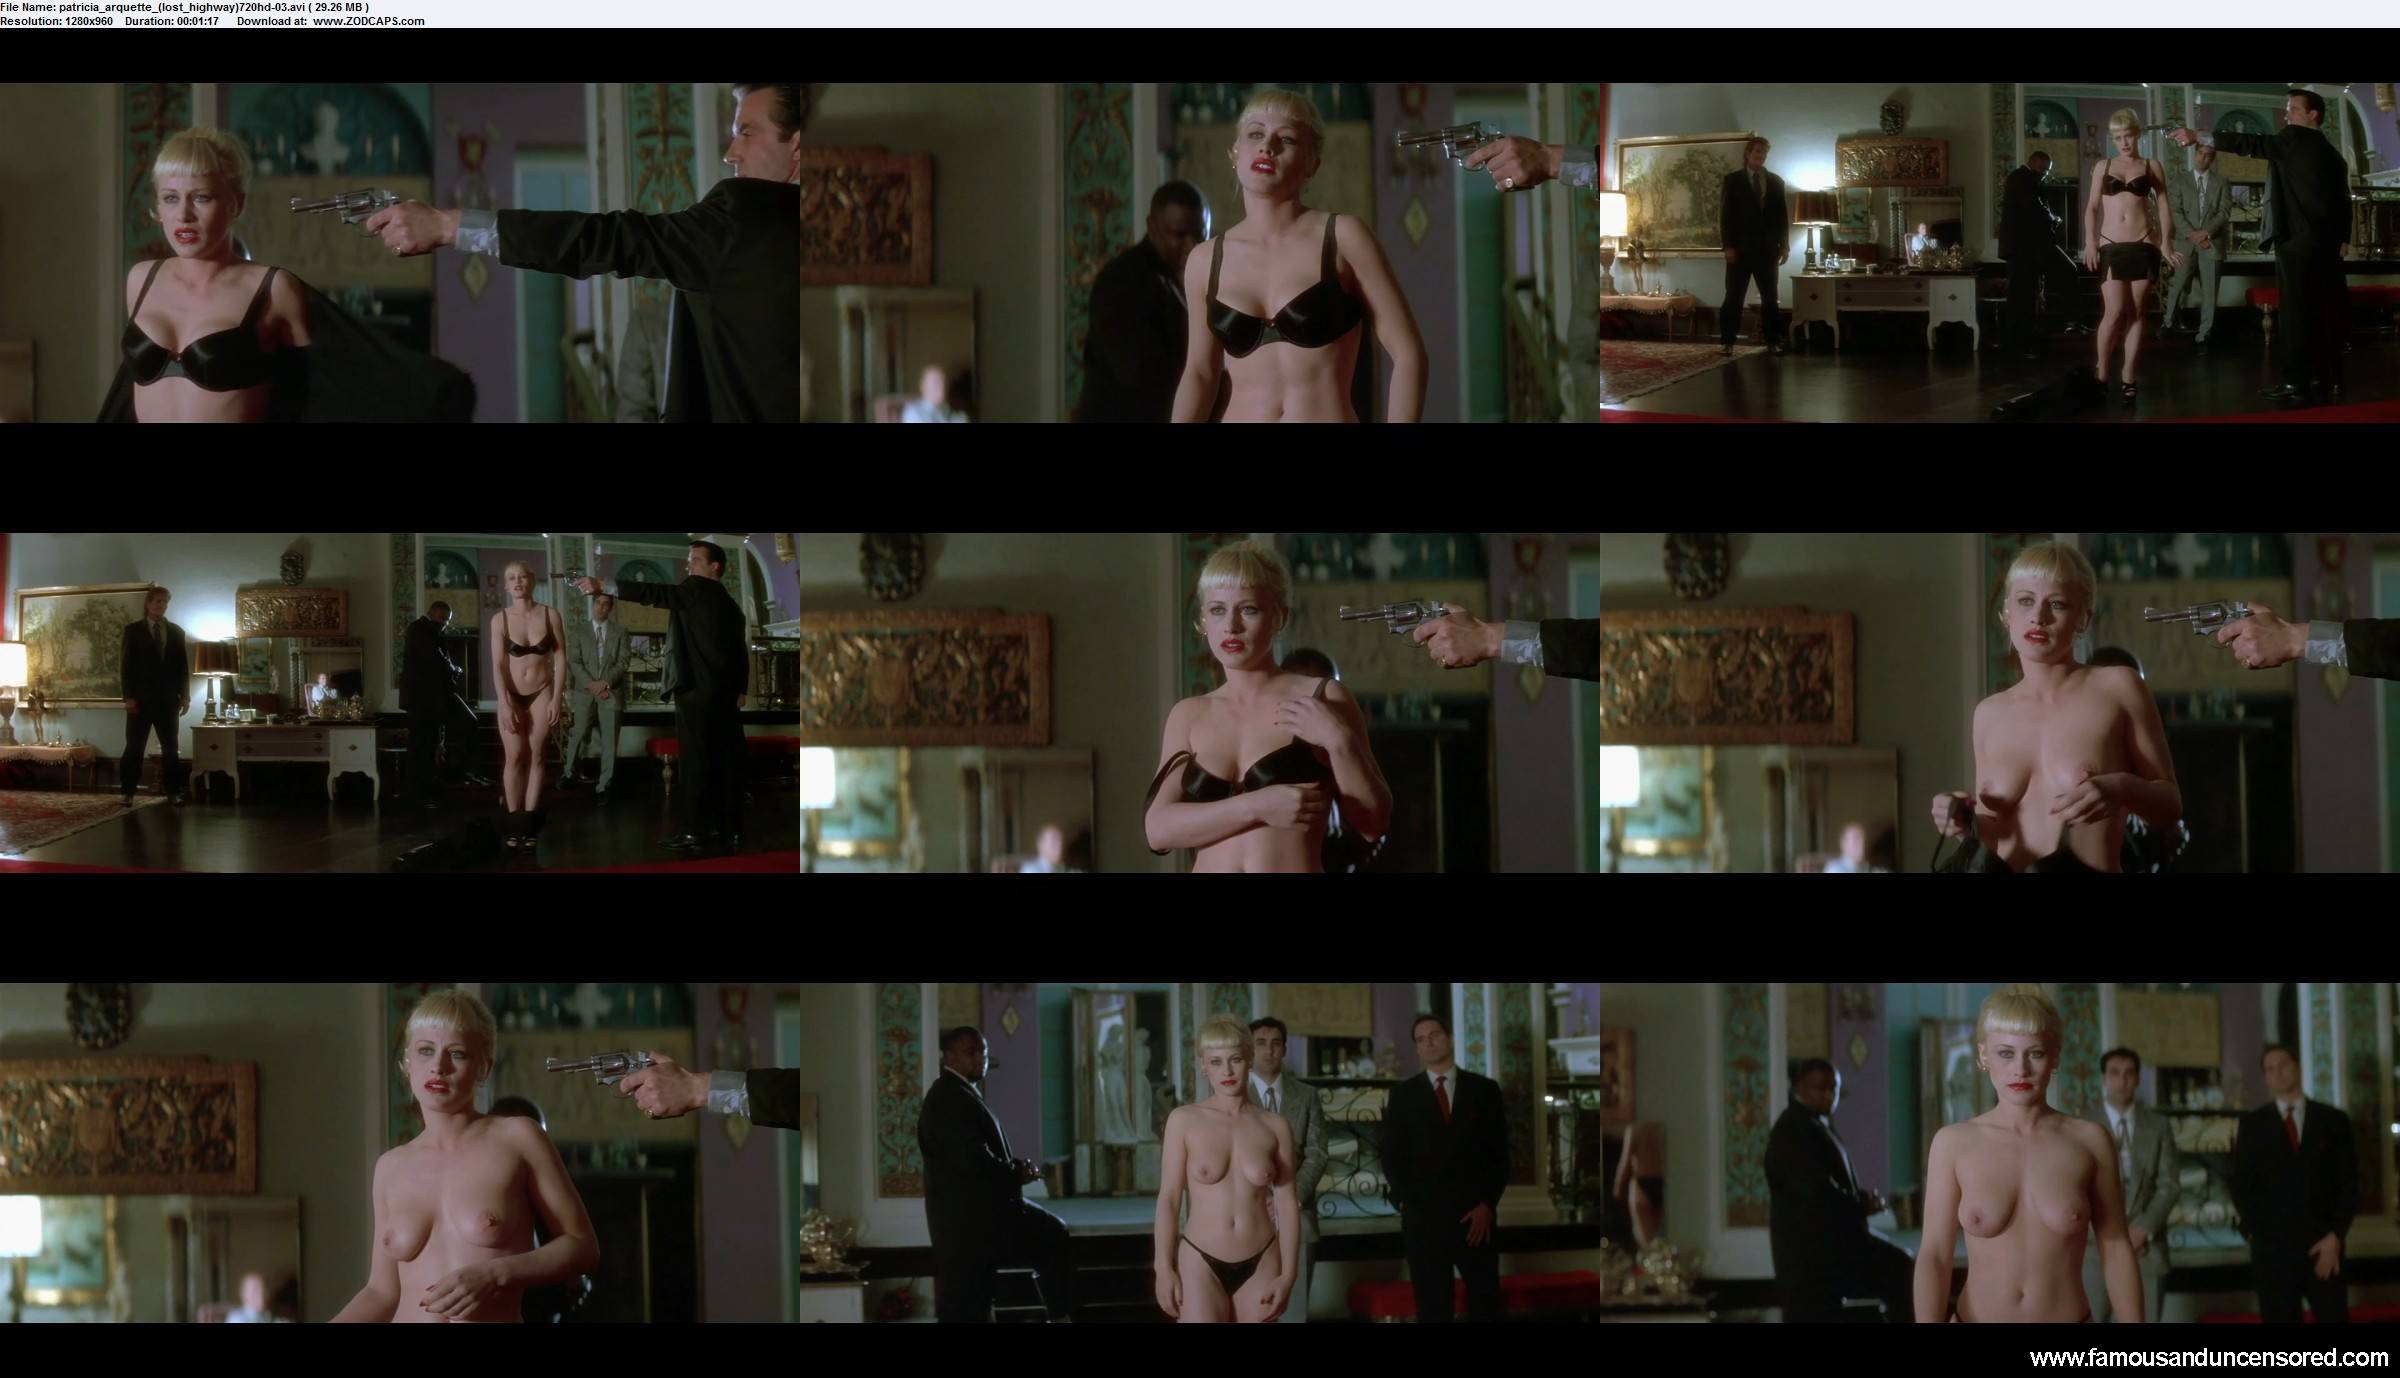 Patricia arquette underwear scene in true romance tnaflix porn pics.